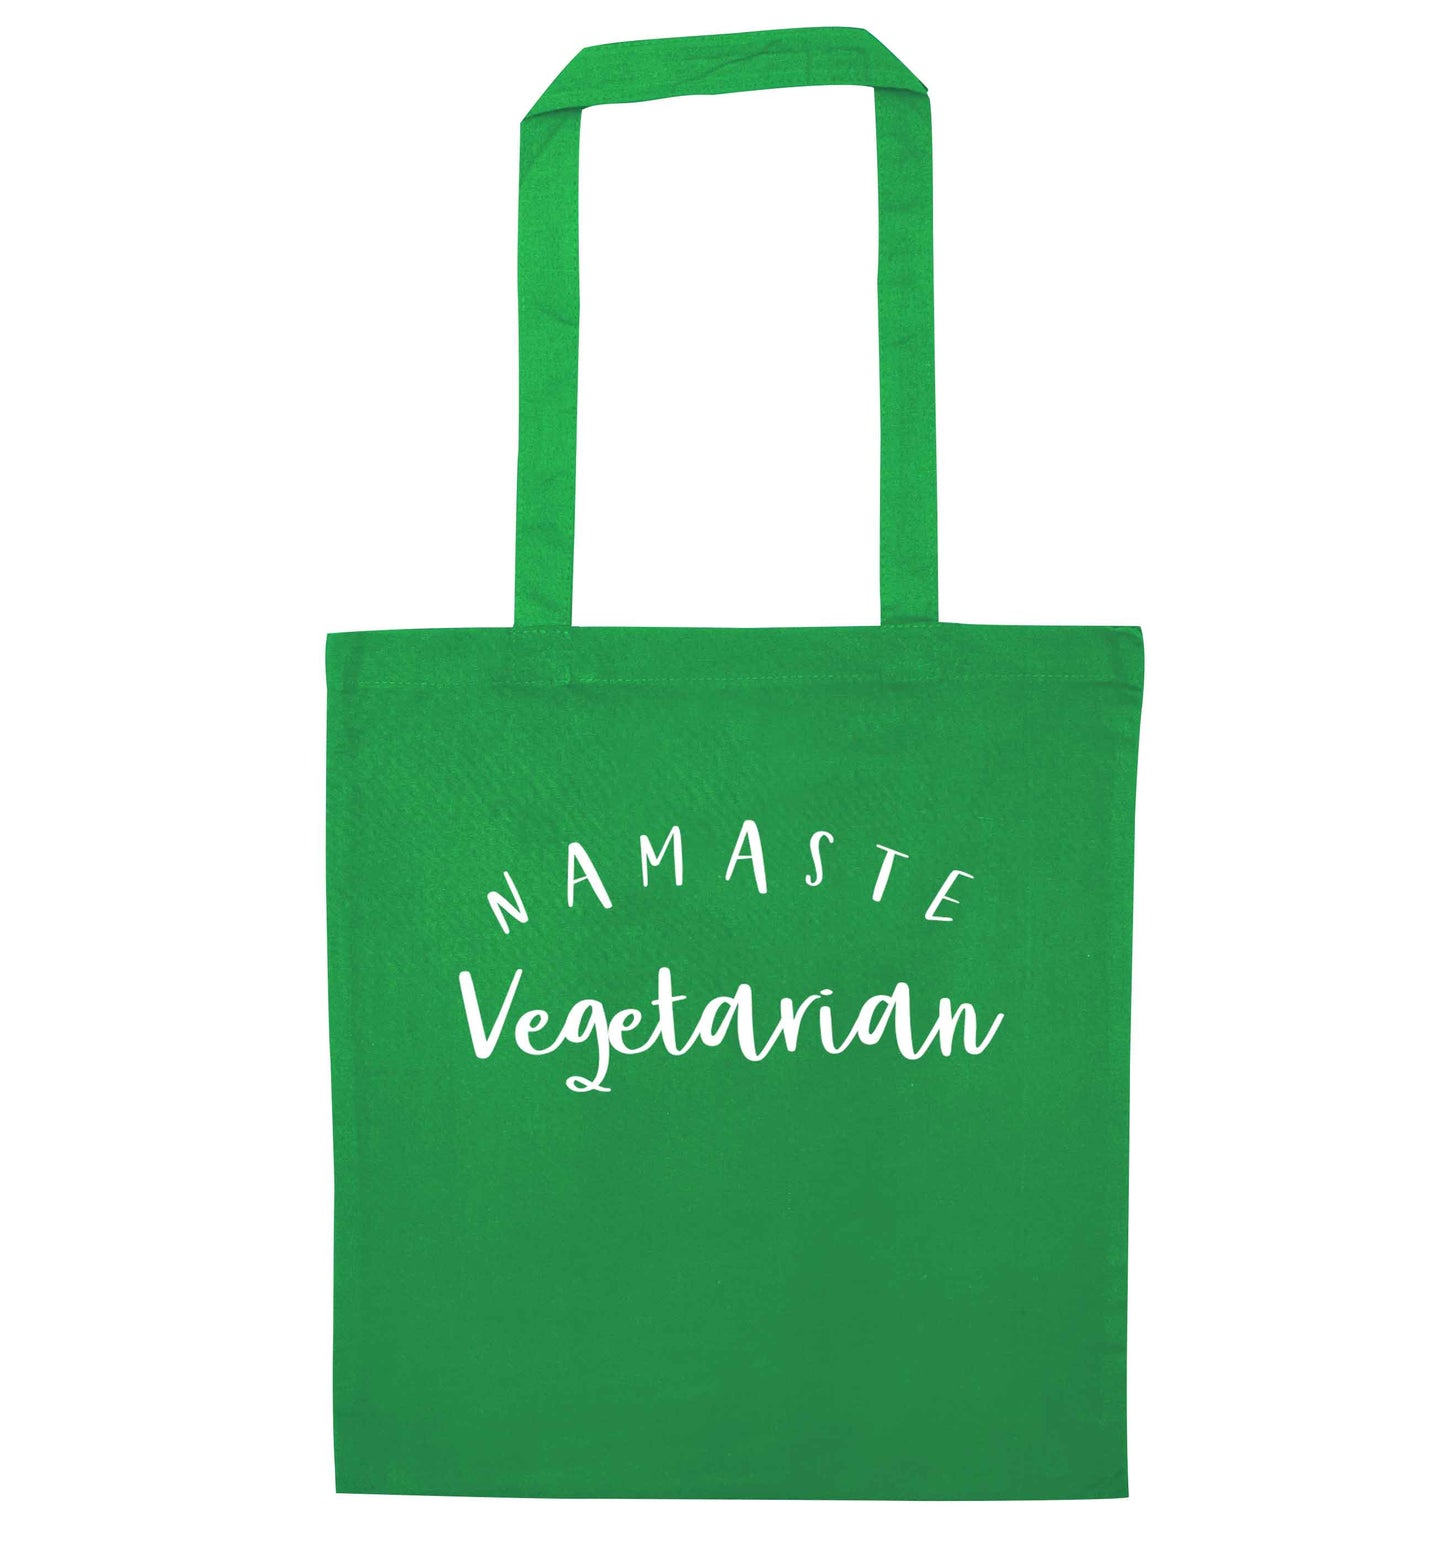 Namaste vegetarian green tote bag